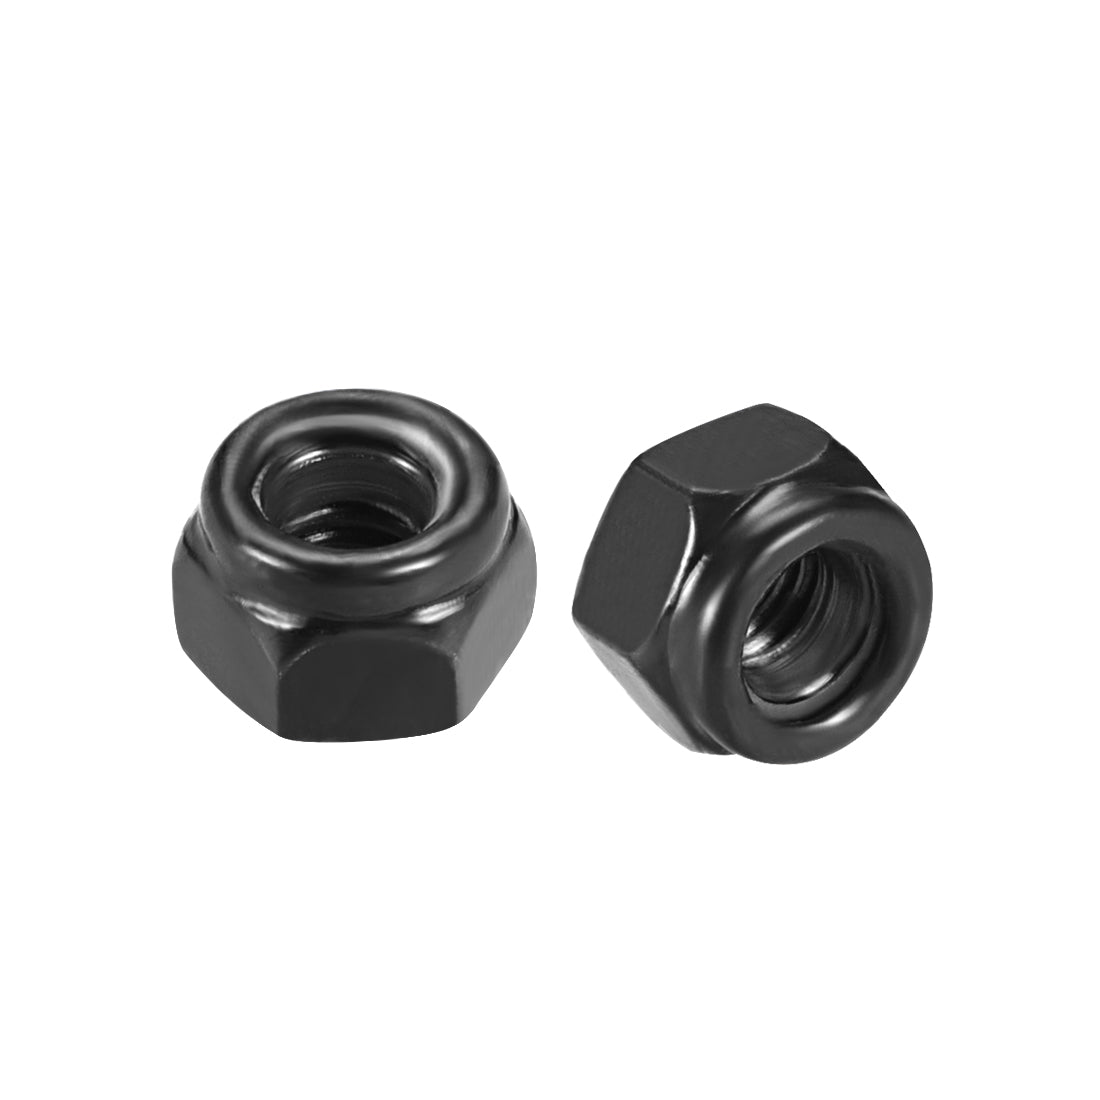 uxcell Uxcell M3x0.5mm Hex Lock Nuts Carbon Steel Nylon Insert Self-Lock Nuts, 50Pcs Black